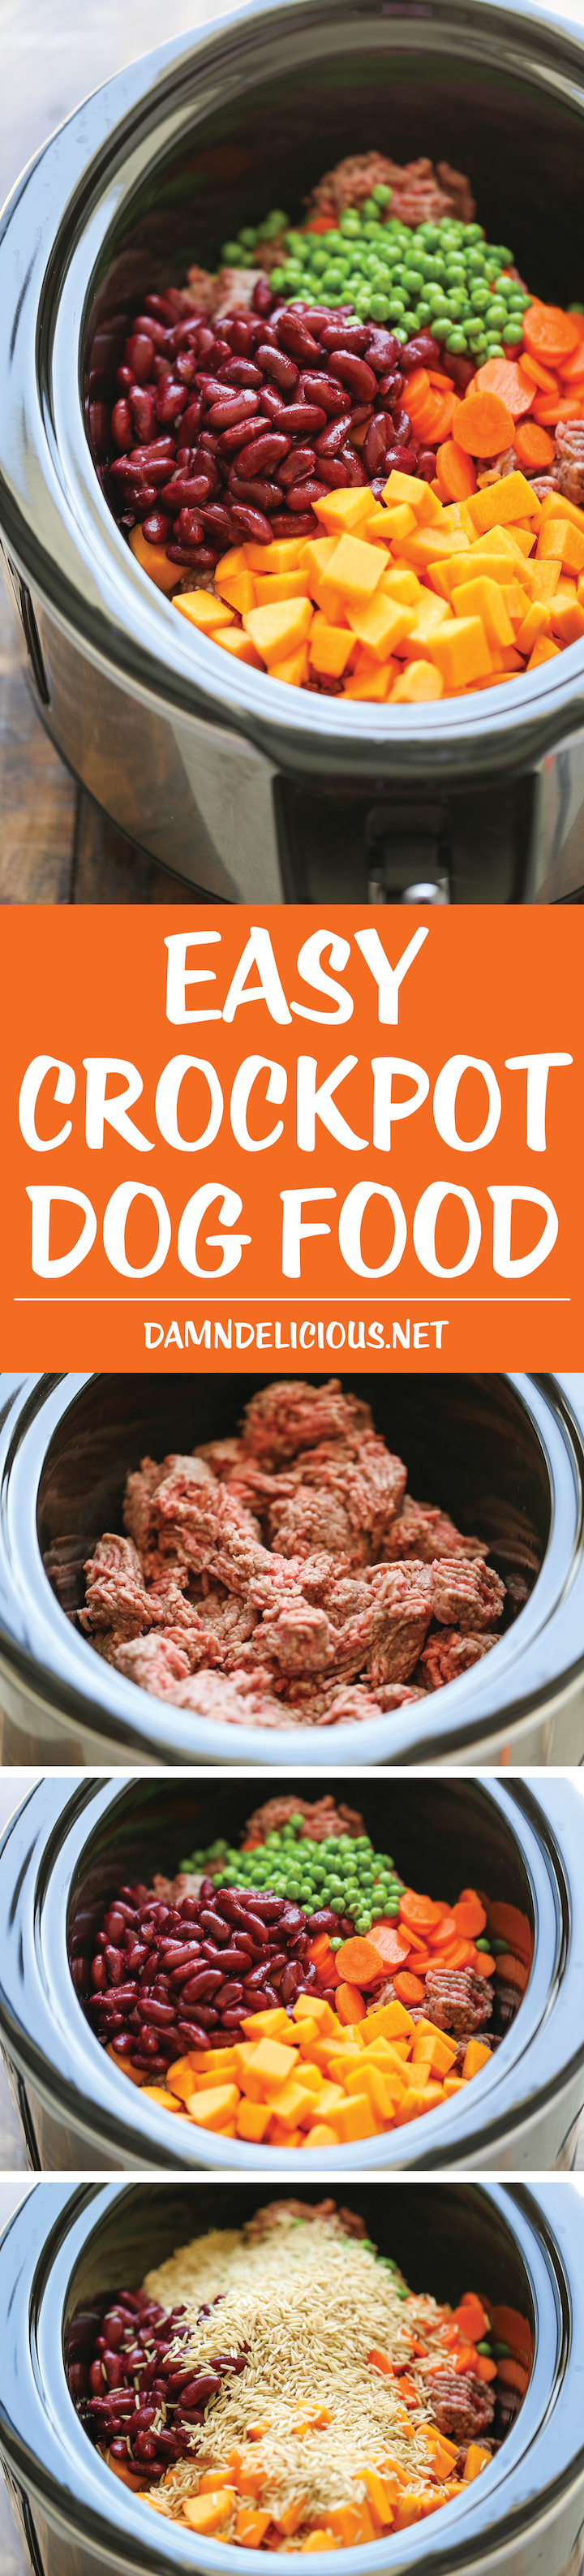 Homemade Healthy Dog Food Recipes Forum 